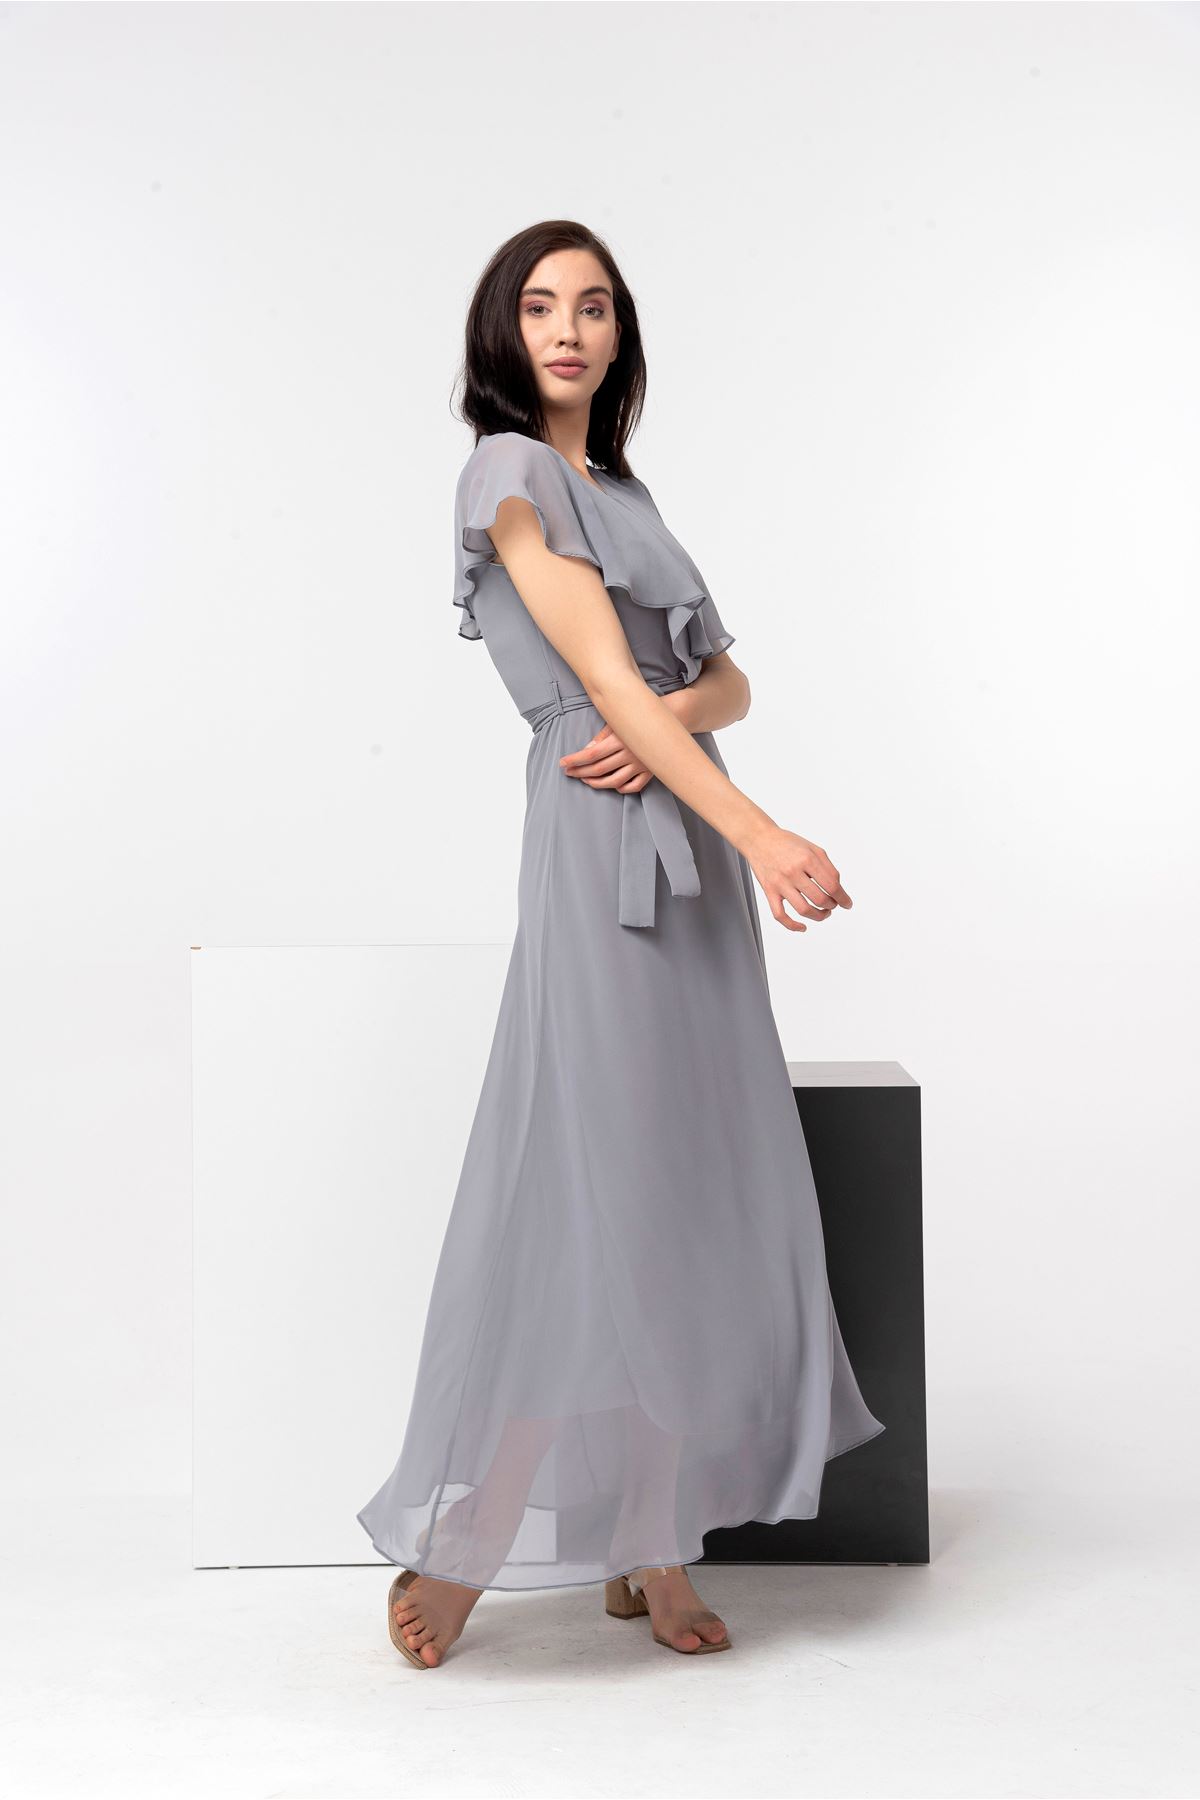 Chiffon Fabric Short Sleeve V-Neck Midi Full Fit Women Dress - Grey